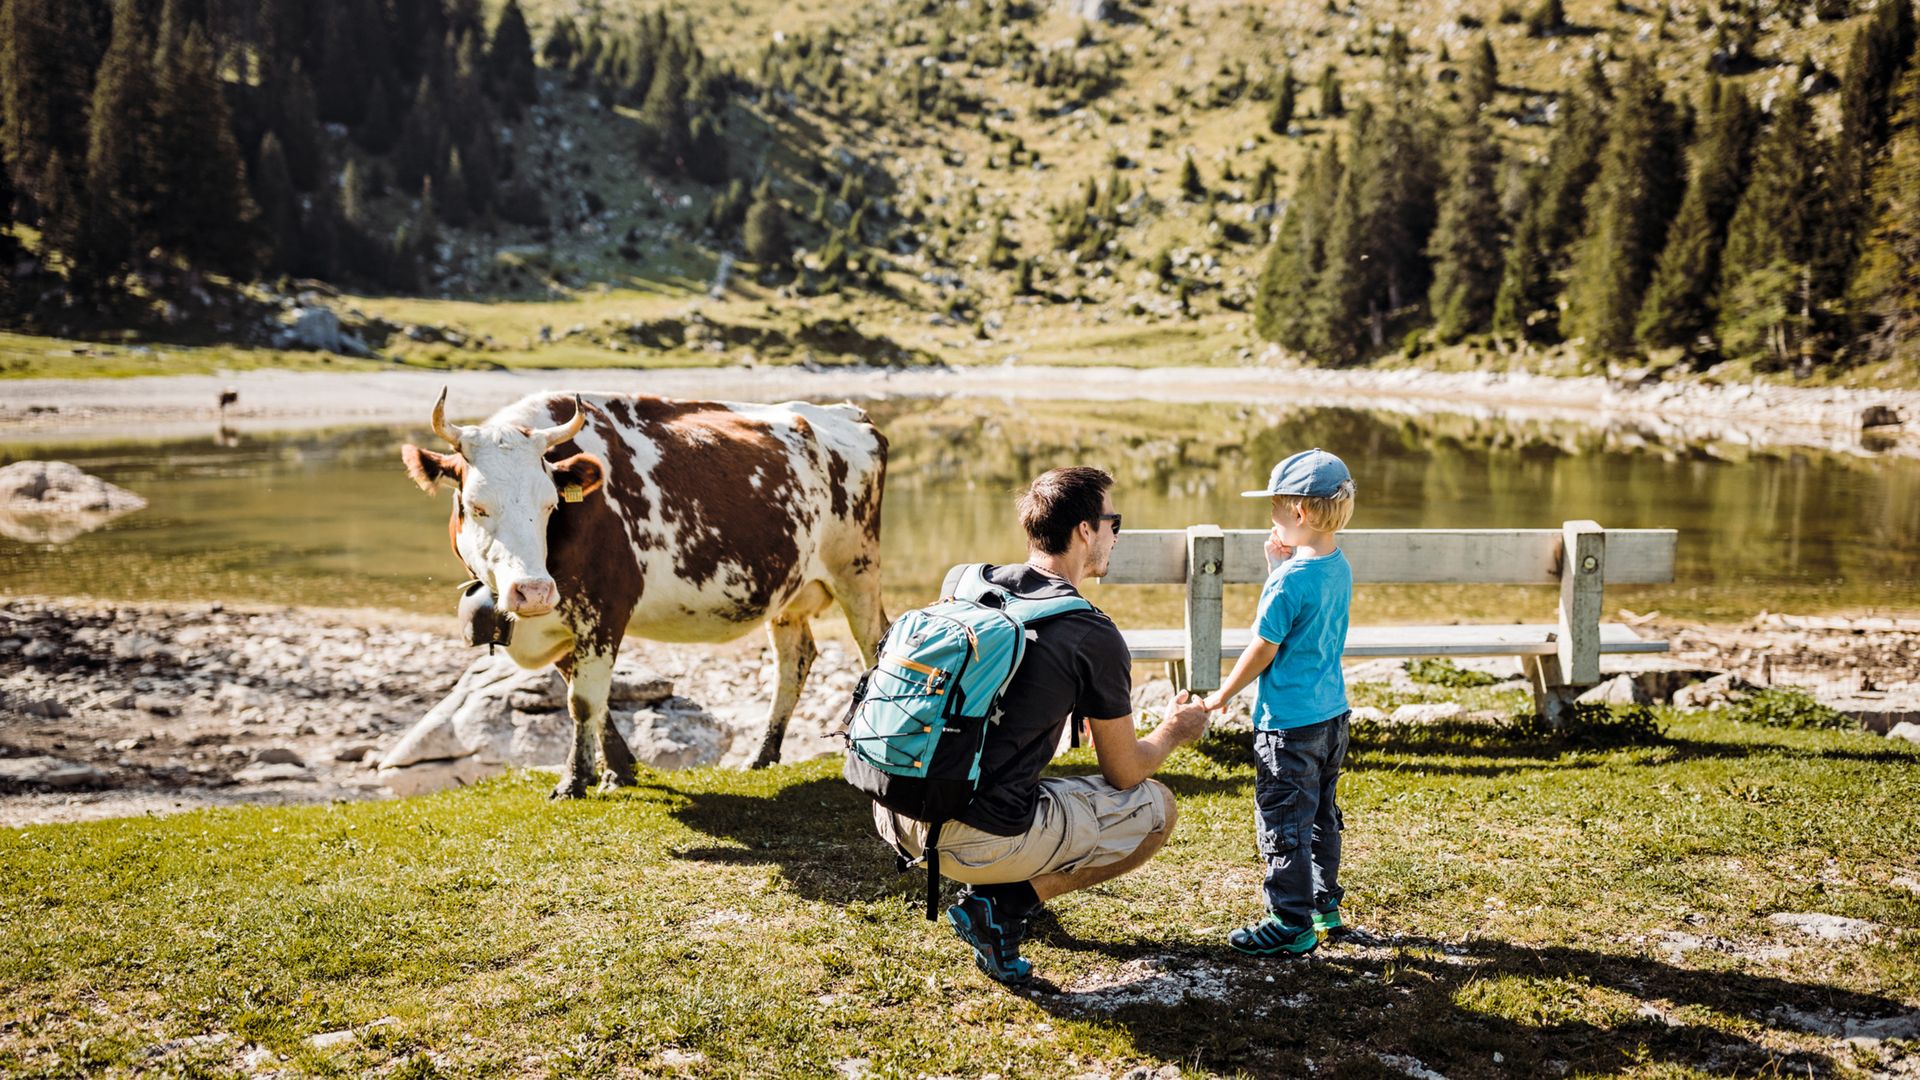 Le père et le fils se tiennent devant un petit lac de montagne et une vache. La vache regarde avec intérêt les deux visiteurs. C'est un beau temps d'été ensoleillé.